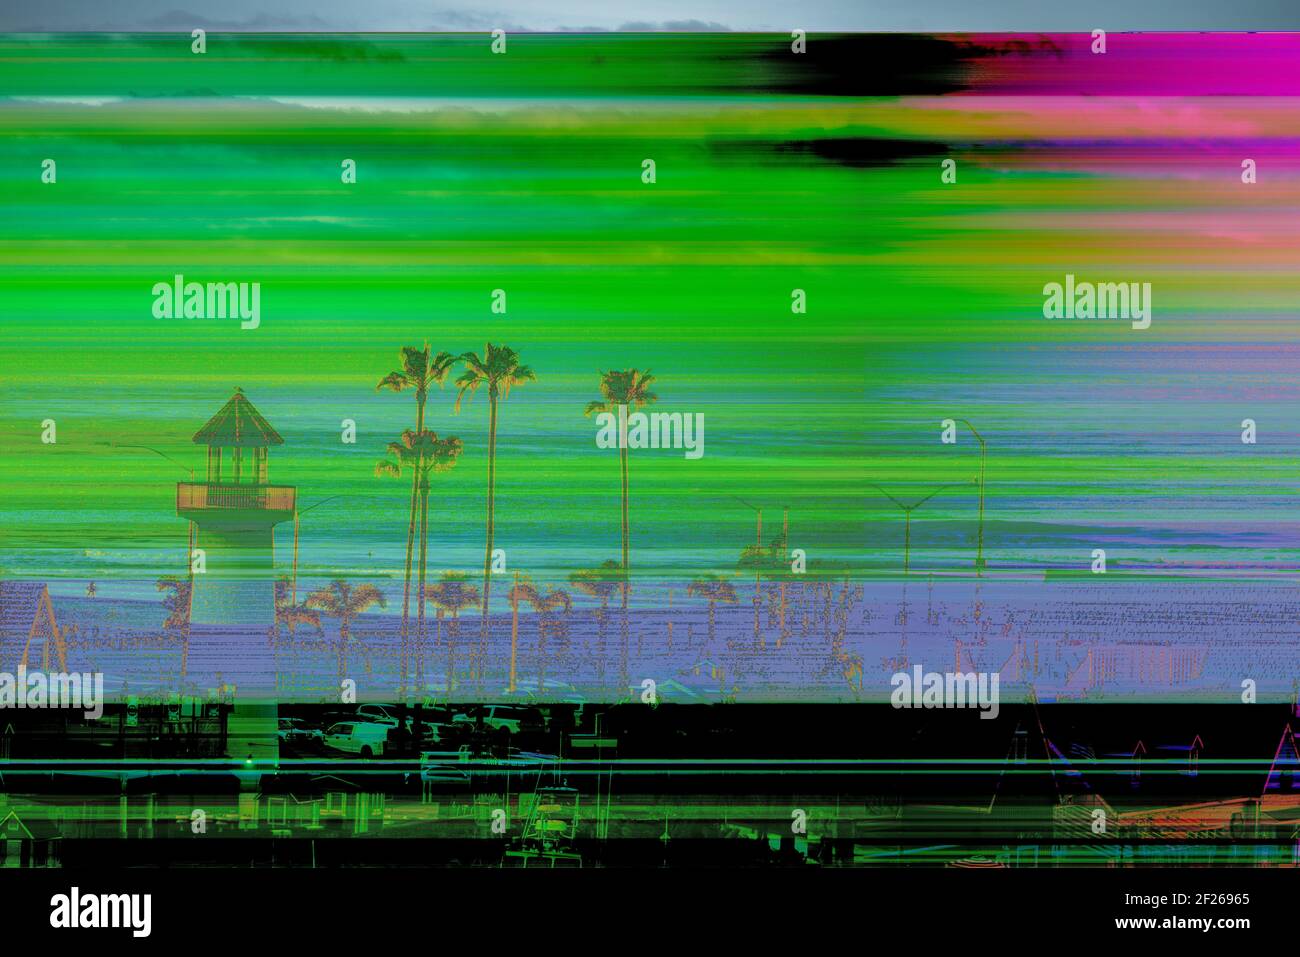 Beschädigtes Digitalbild zeigt horizontale Linien, verblasste Bilder mit verschiedenen Farben. Stockfoto